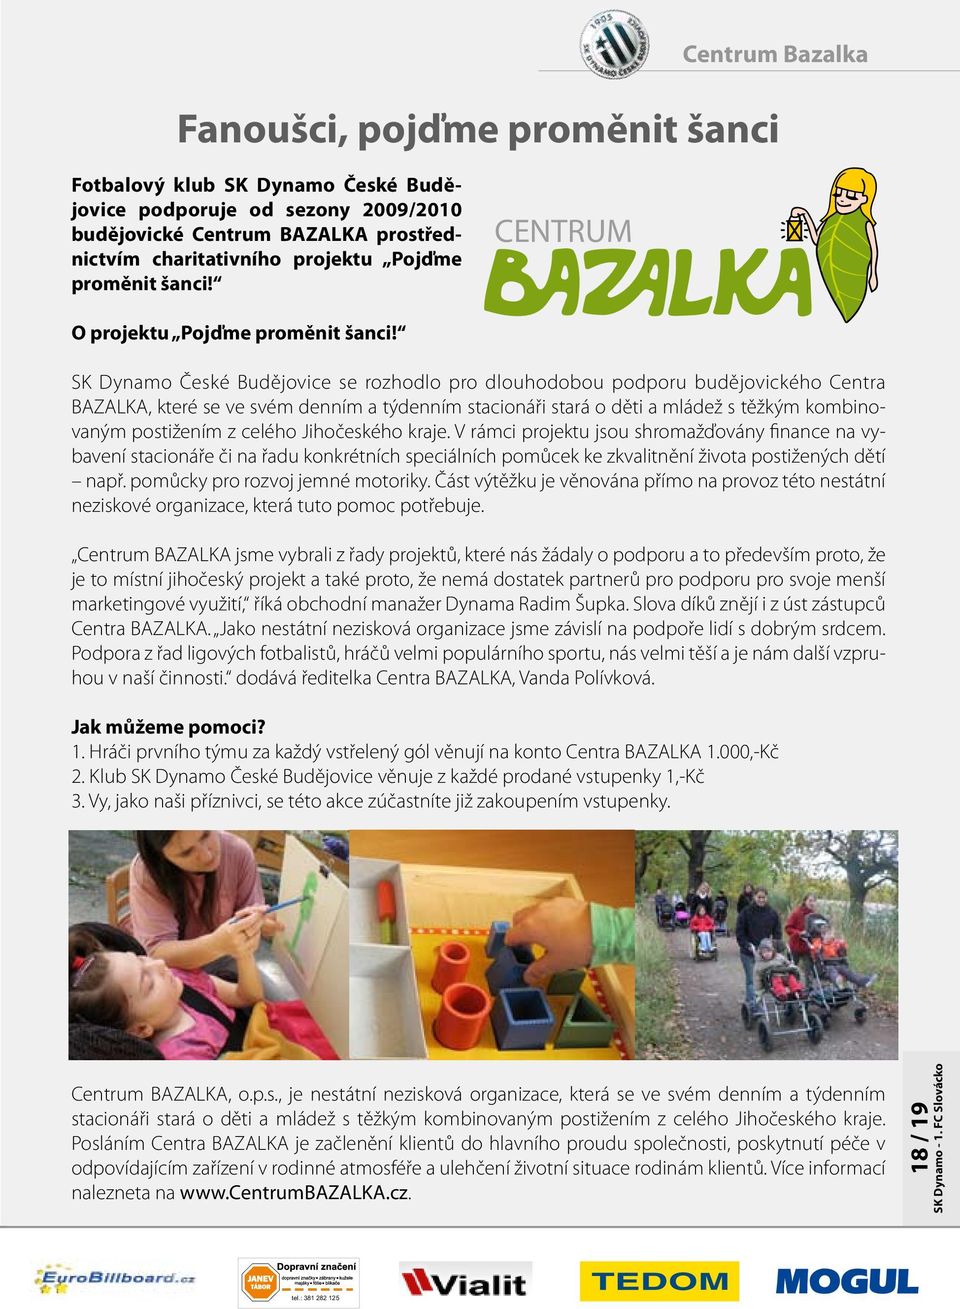 SK Dynamo České Budějovice se rozhodlo pro dlouhodobou podporu budějovického Centra BAZALKA, které se ve svém denním a týdenním stacionáři stará o děti a mládež s těžkým kombinovaným postižením z